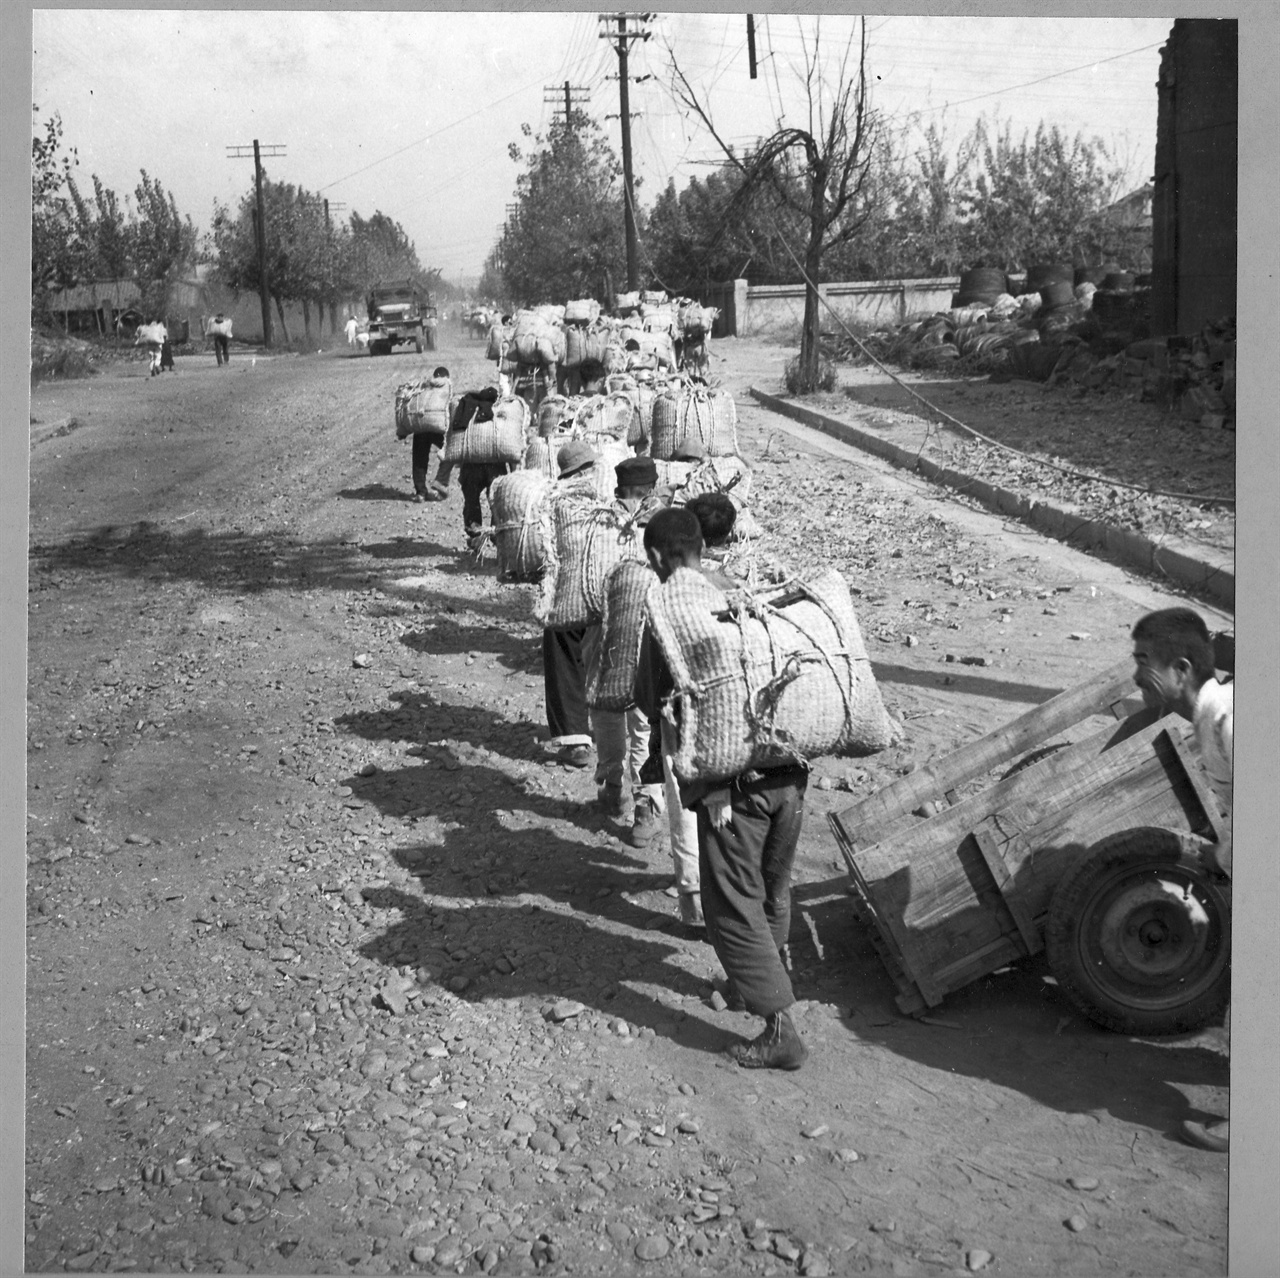 1950. 10. 서울, 한강나루터에서 쌀가마니를 등으로 져다 나르는 노동자들.